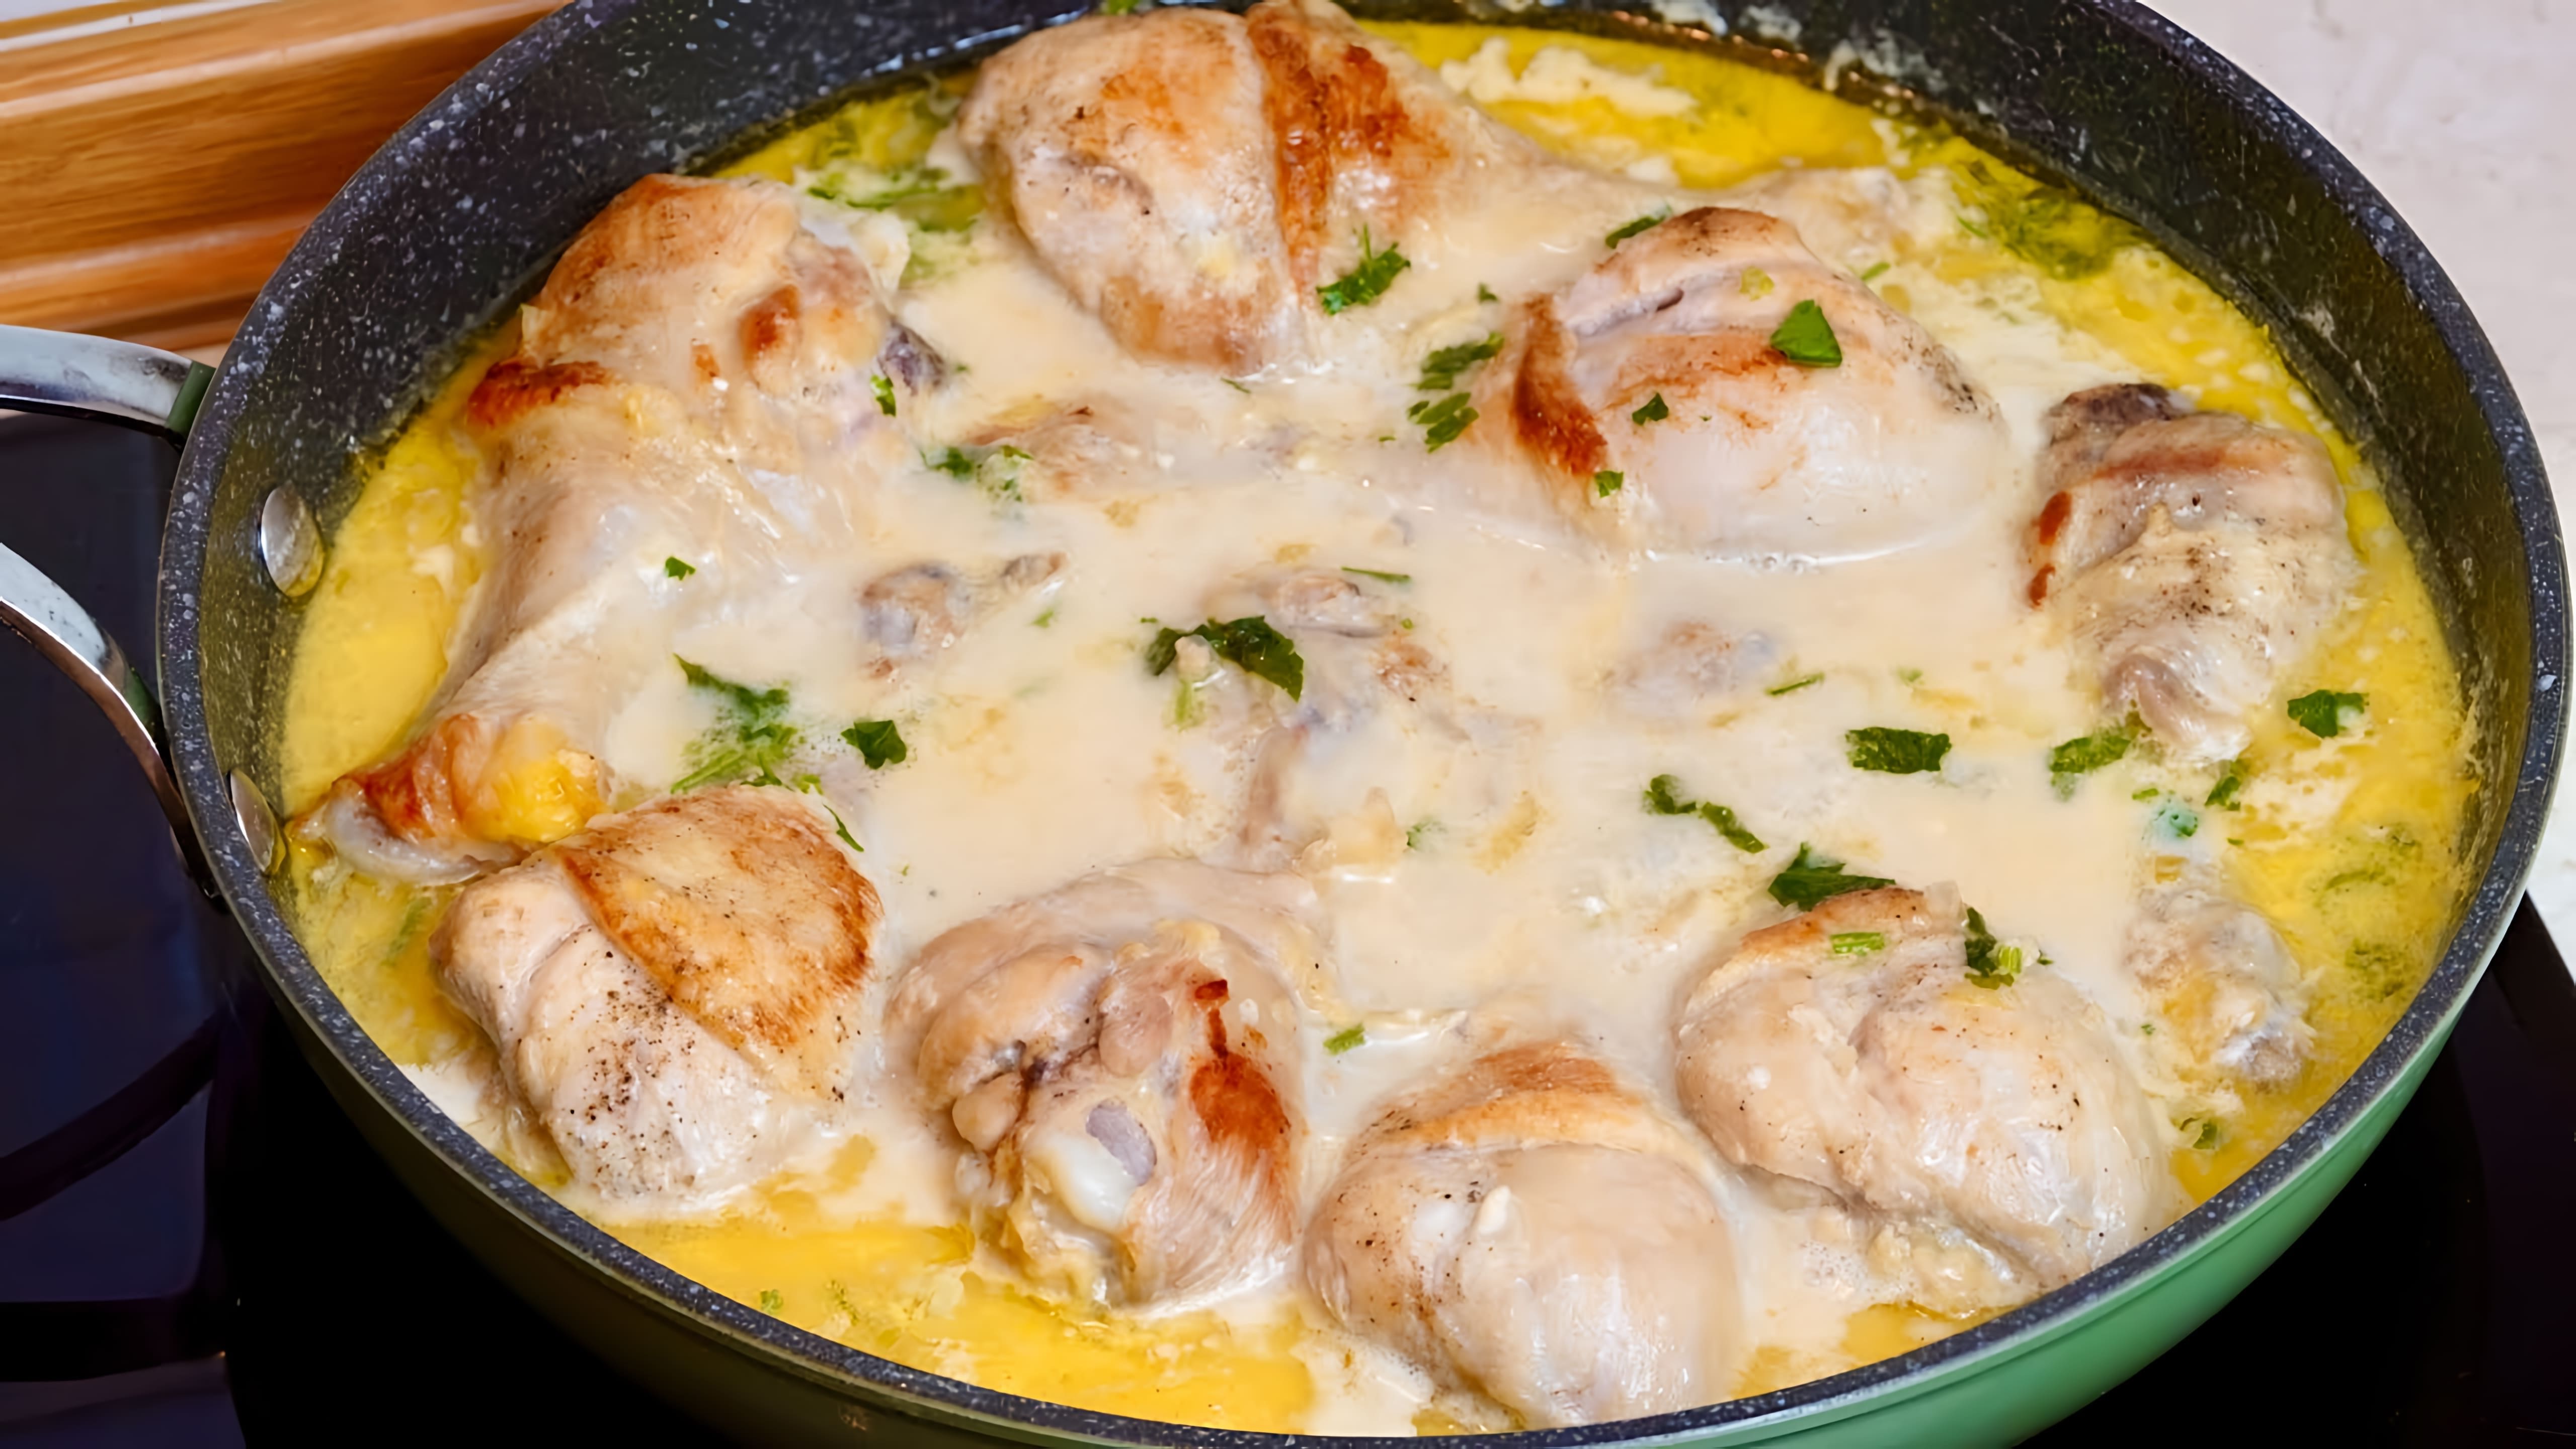 Видео как приготовить вкусное куриное блюдо в сливочном соусе, используя куриные ножки или бедра